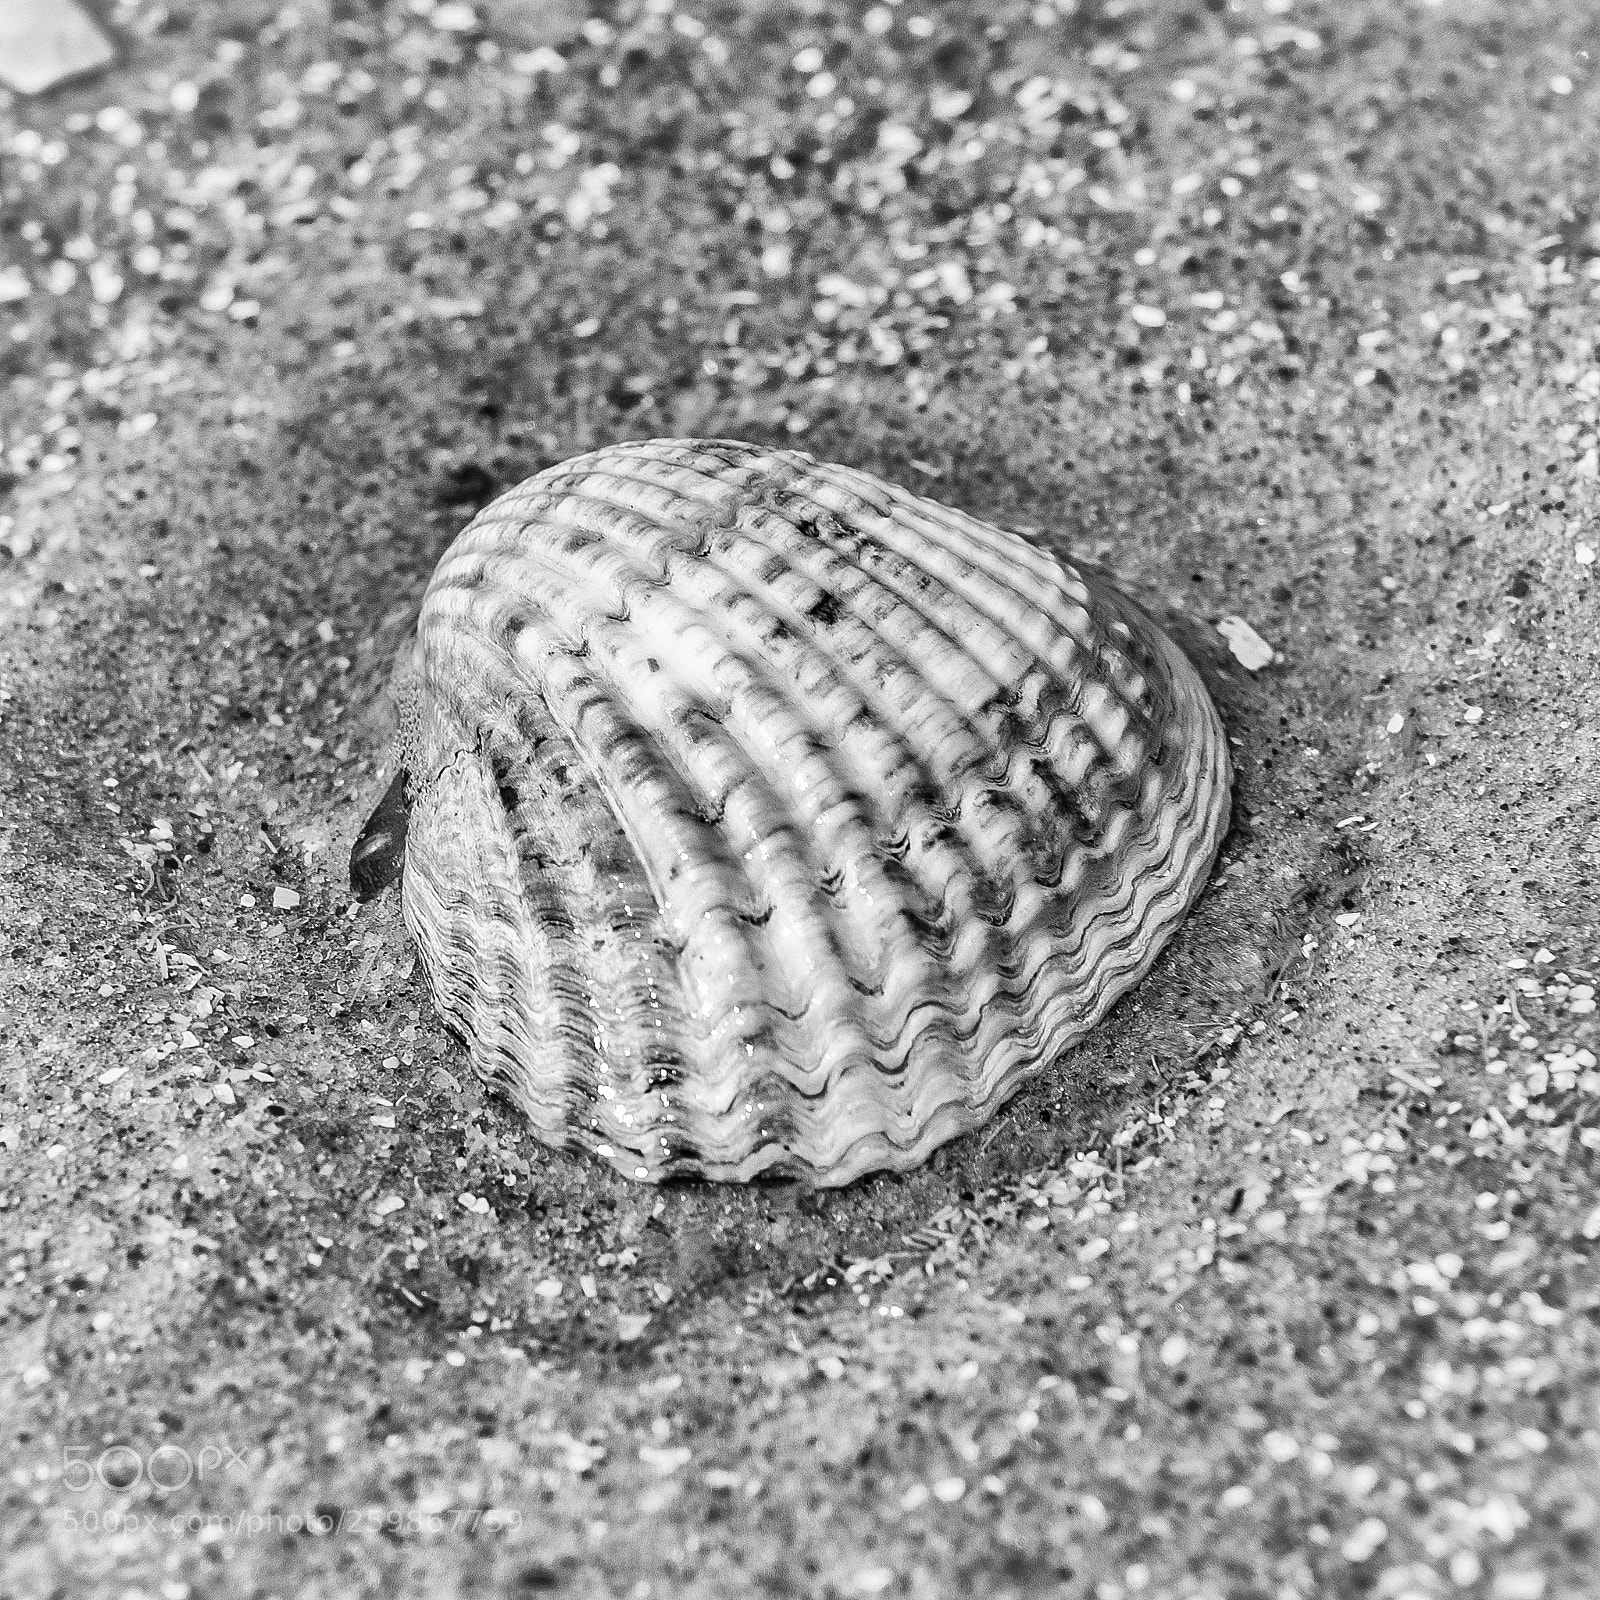 Nikon D810 sample photo. Natural -sea shell at photography